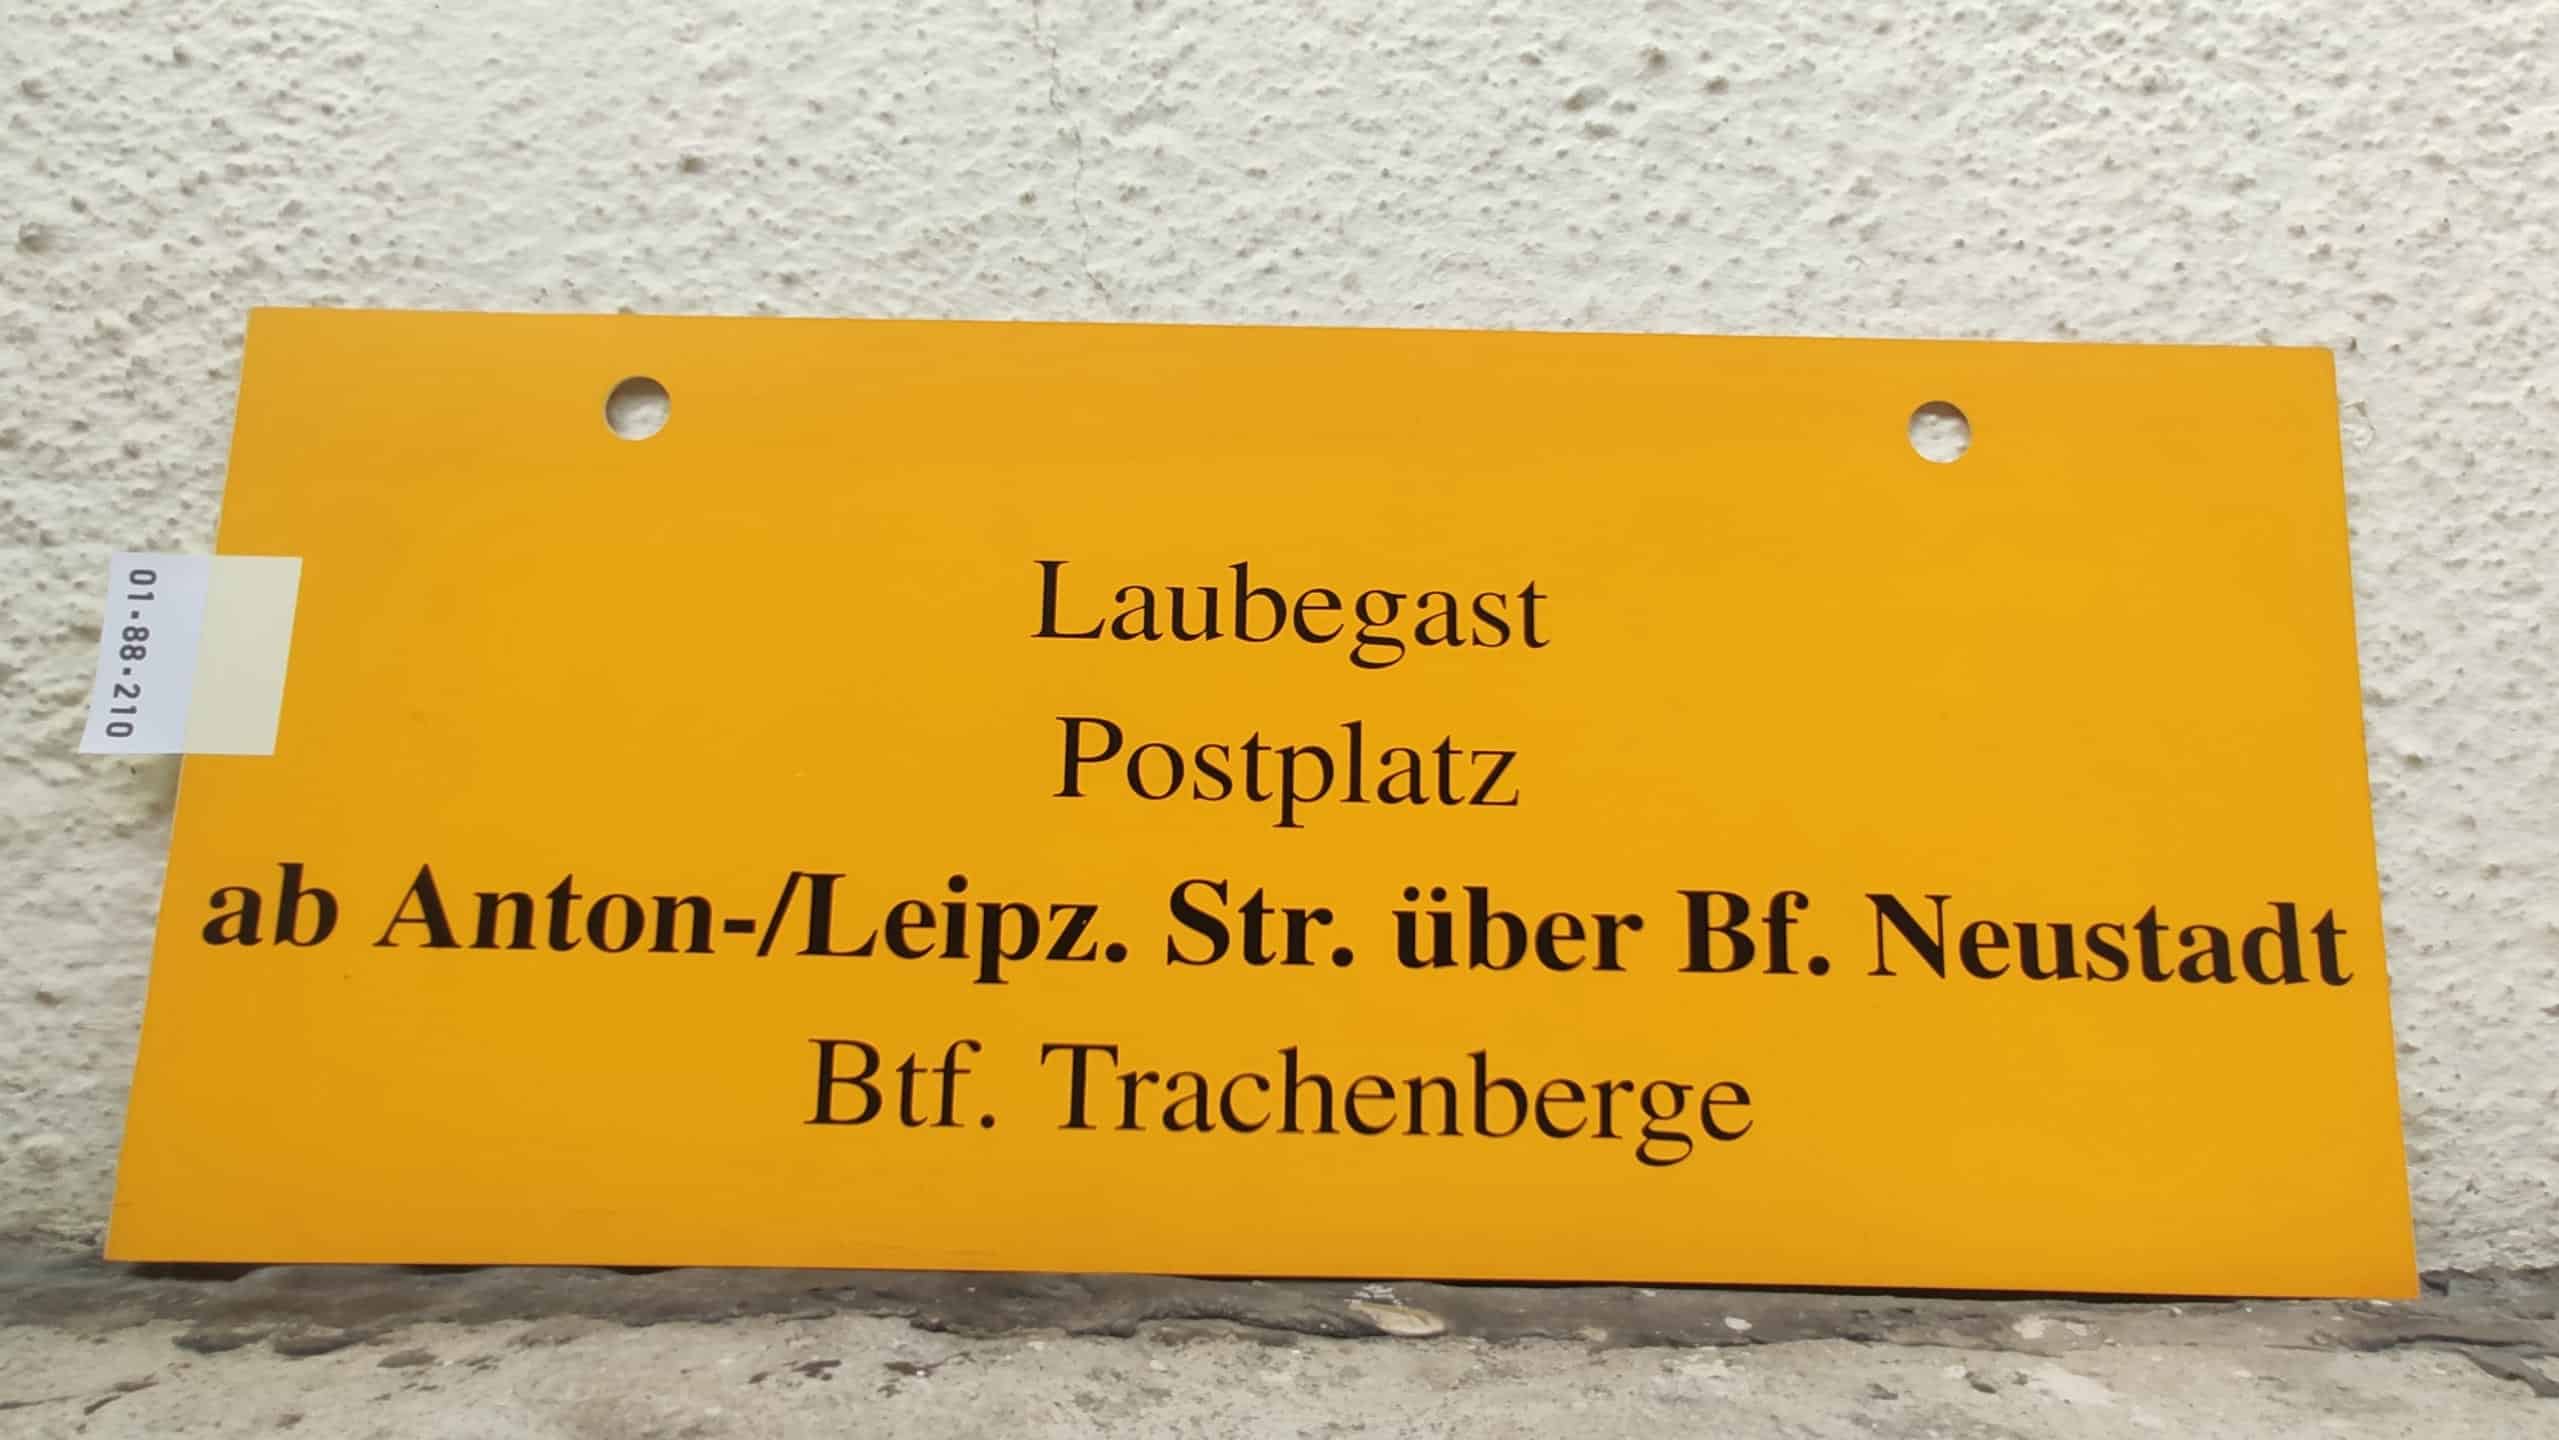 Laubegast Postplatz ab Anton-/Leipz. Str. über Bf. Neustadt Btf. Trachenberge